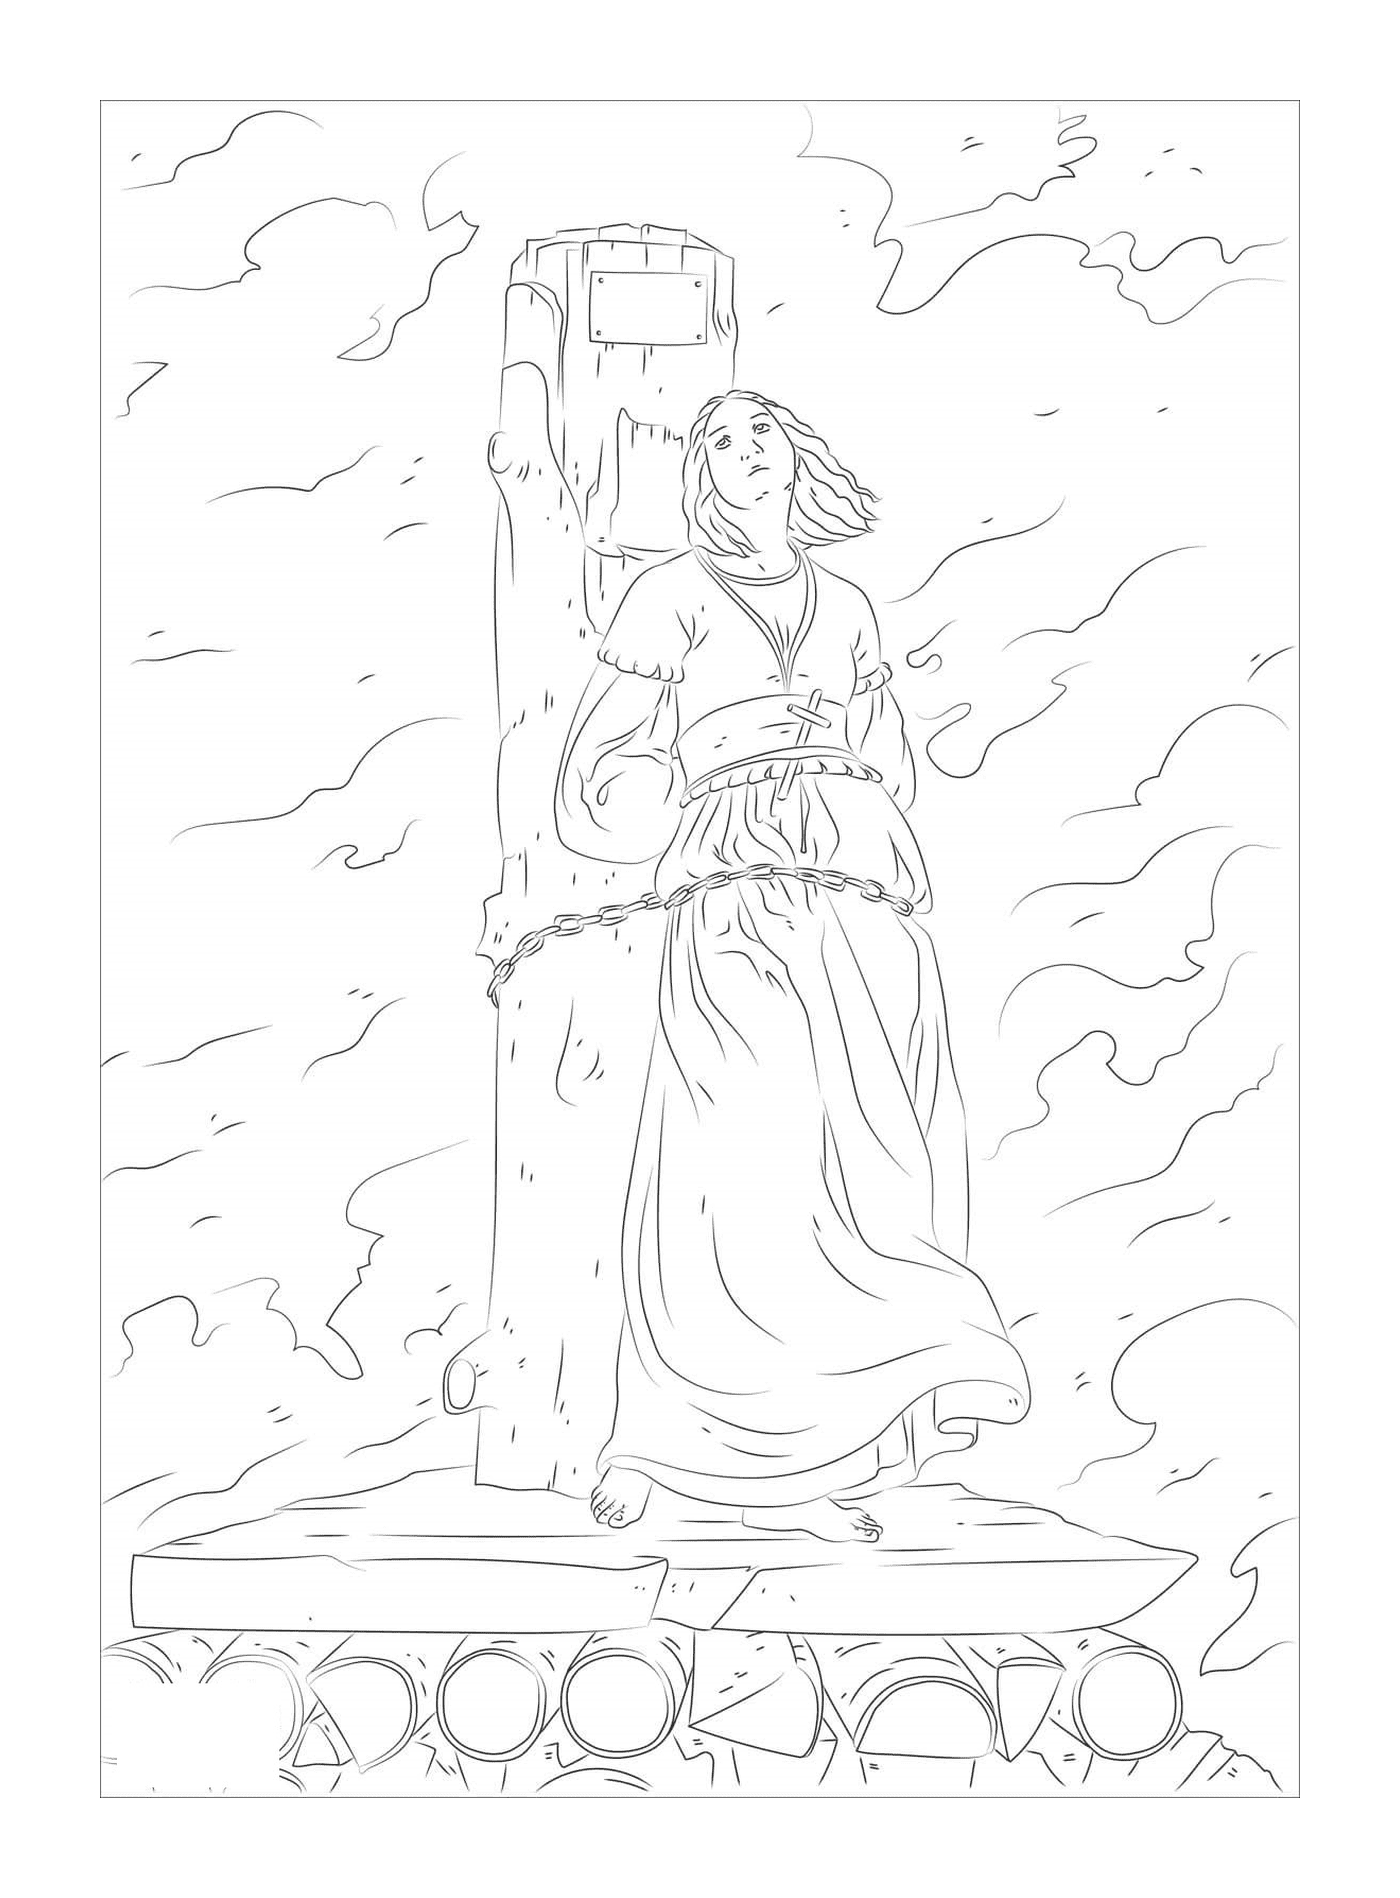   Jeanne d'Arc brûlée sur le bûcher 